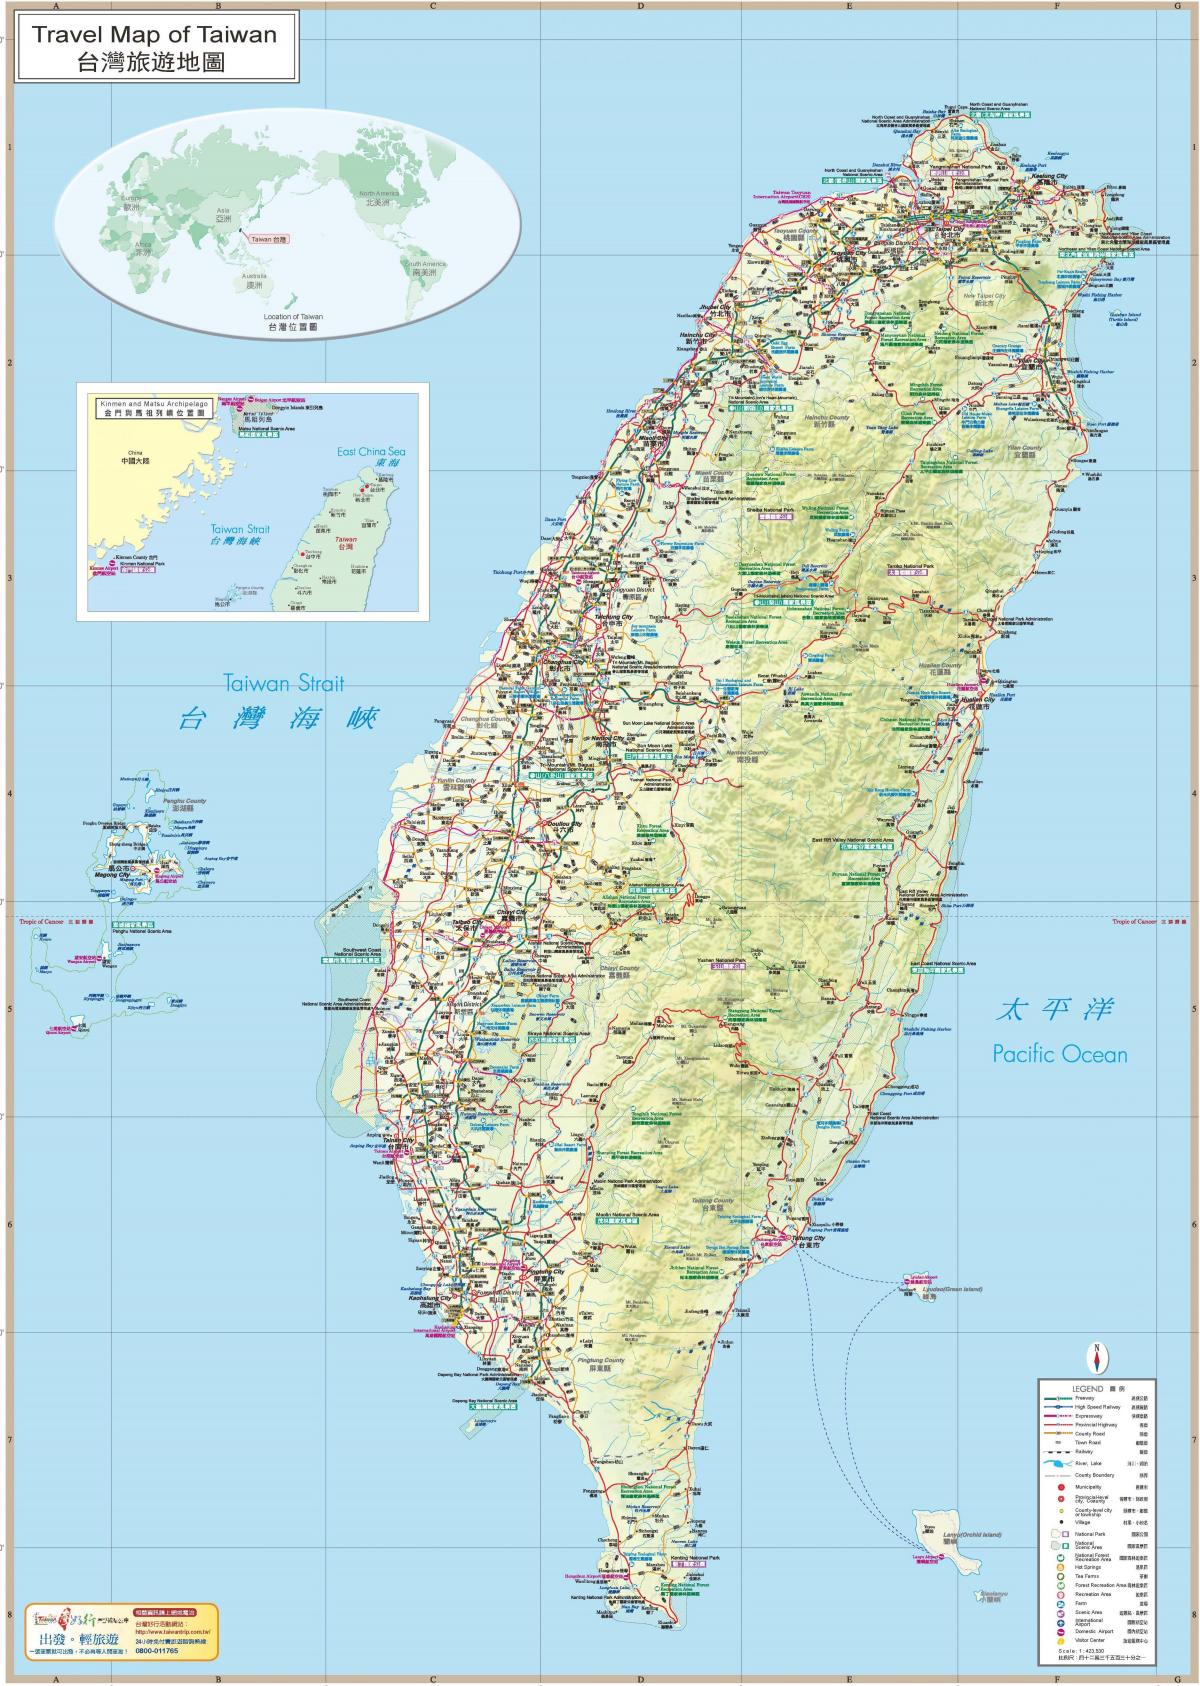 χάρτης της Ταϊβάν τουριστικά αξιοθέατα